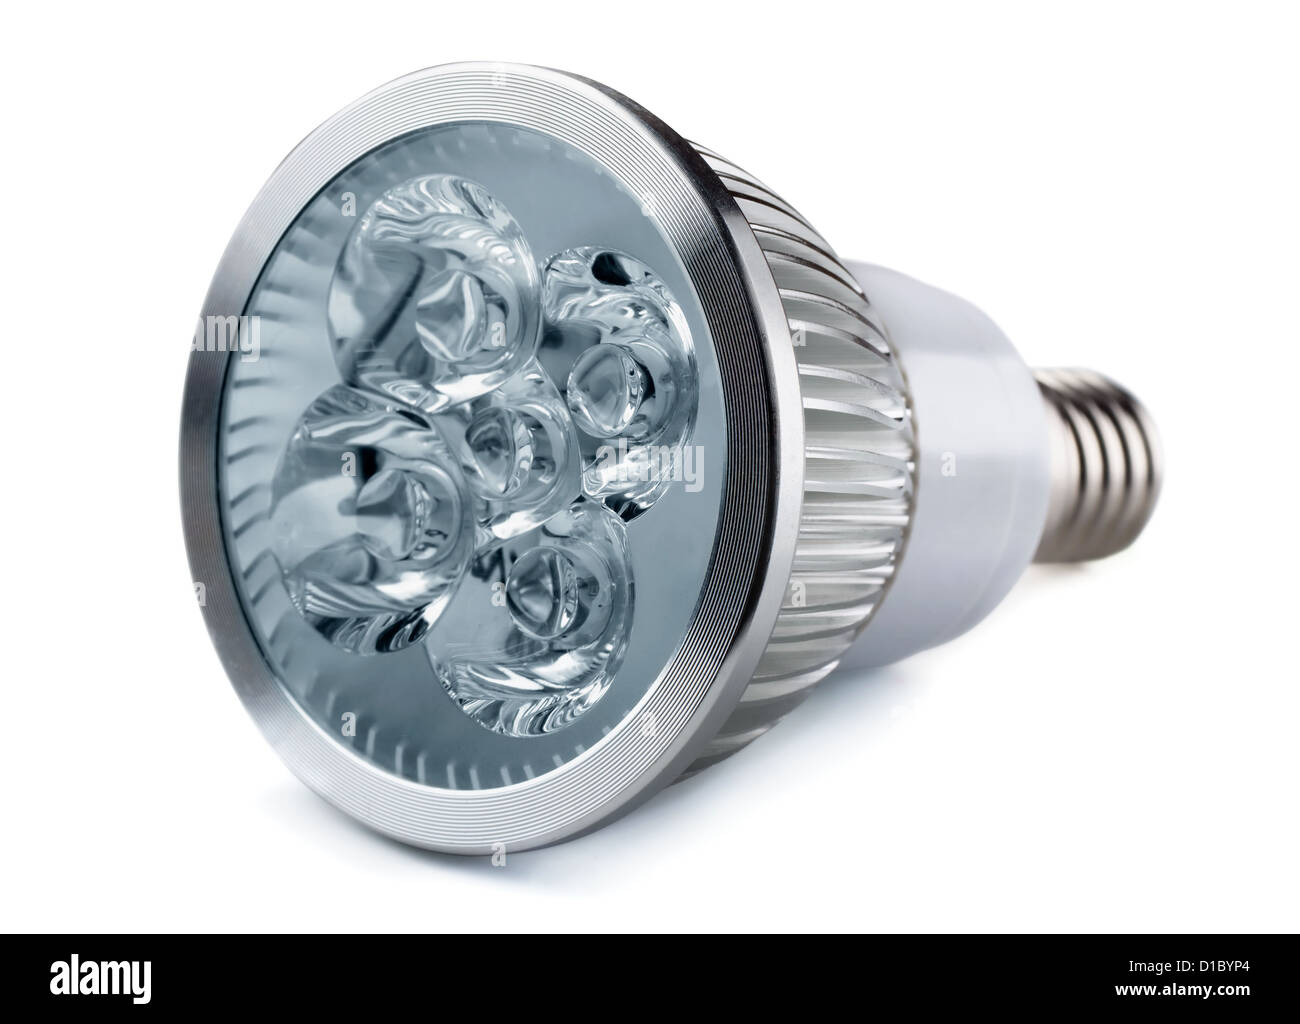 Energy saving LED light bulb isolated on white Stock Photo